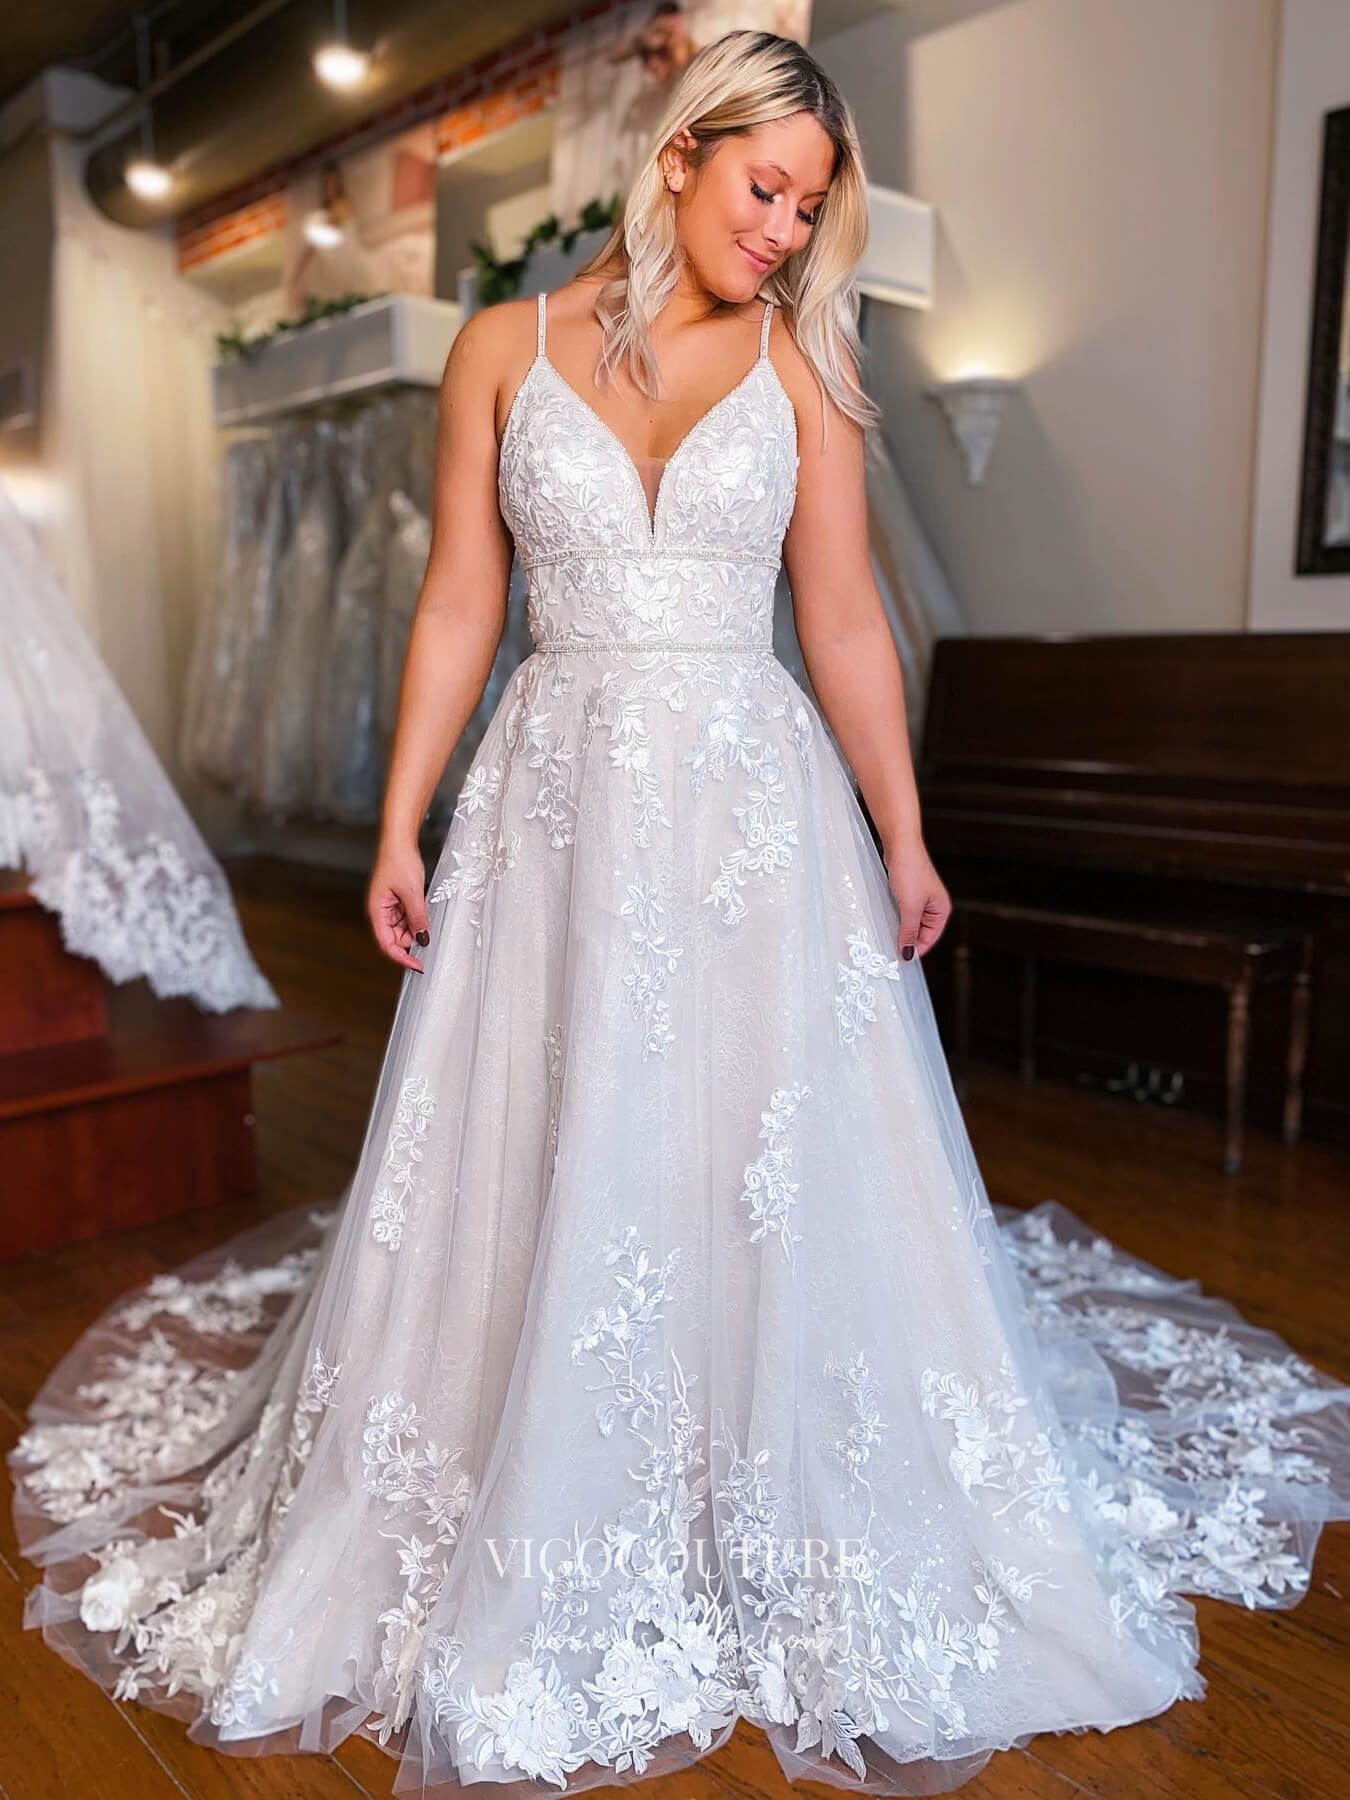 vigocouture-Lace Applique Spaghetti Strap Wedding Dresses Plunging V-Neck Bridal Dresses W0071-Wedding Dresses-vigocouture-As Pictured-US2-